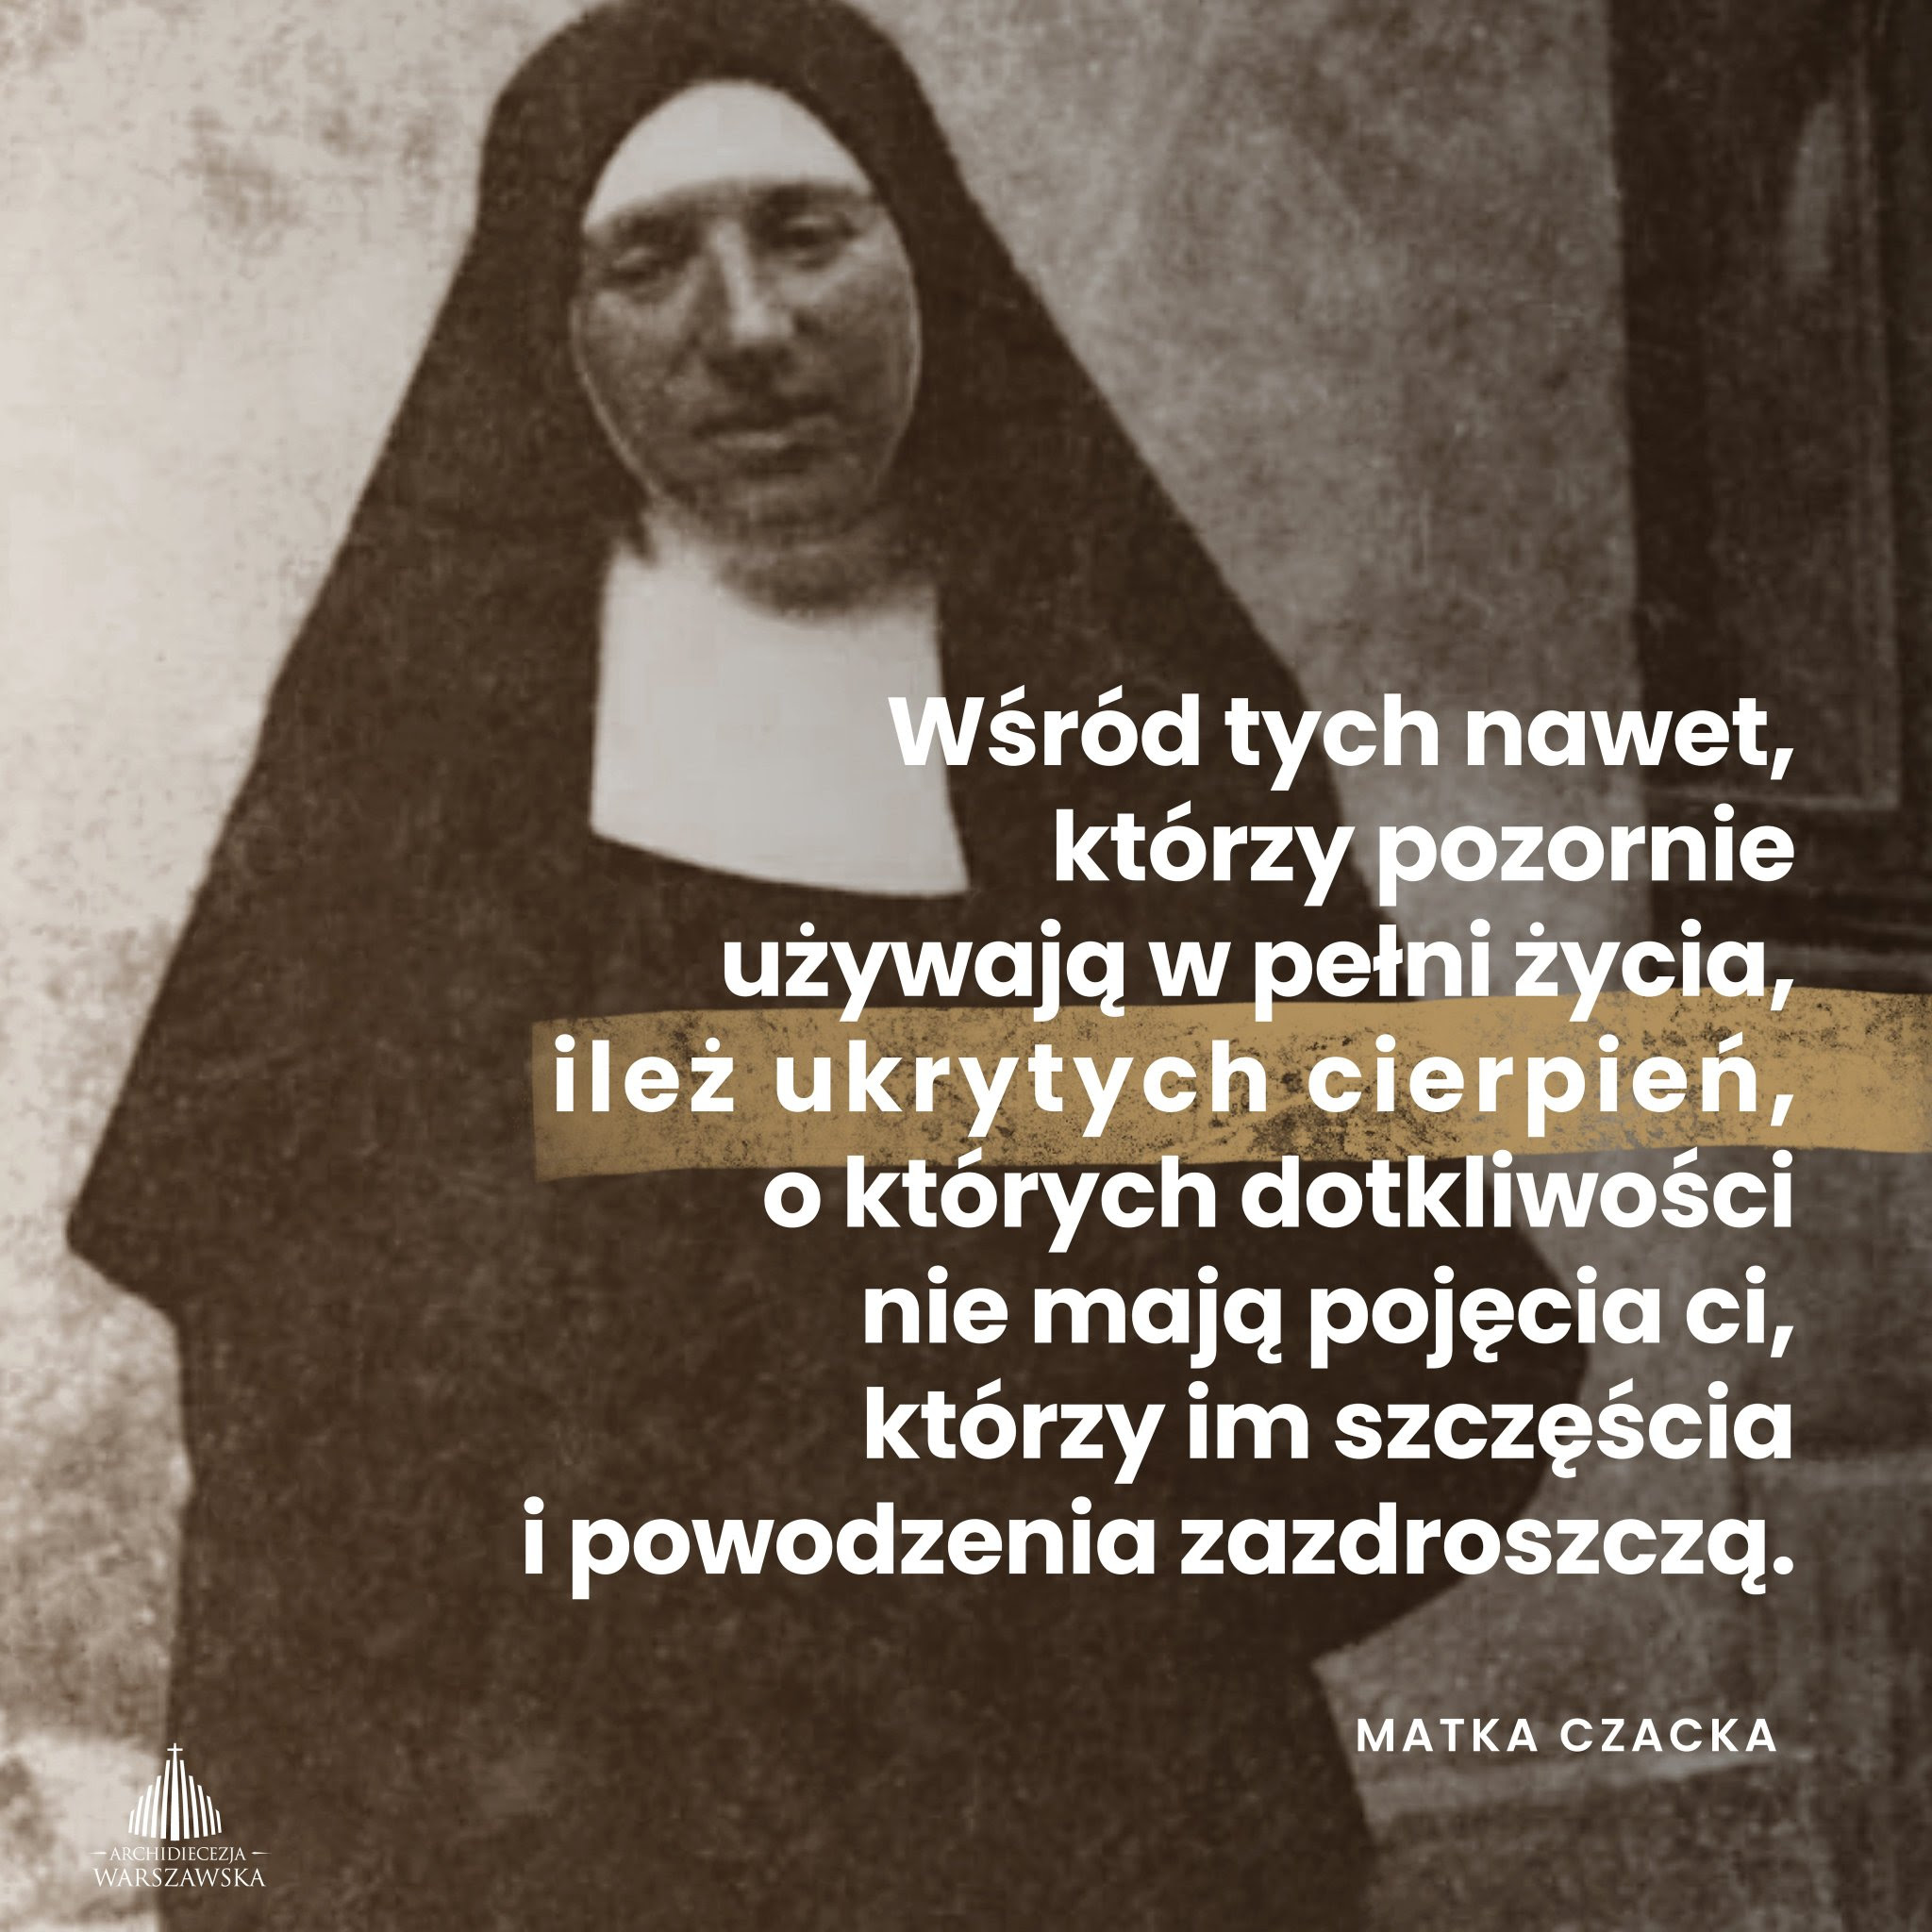 EpiskopatNews on Twitter: "RT @ArchWarszawska: 145 lat temu urodziła się bł.  matka Elżbieta #Czacka. https://t.co/FO0vk3pKh9" / Twitter